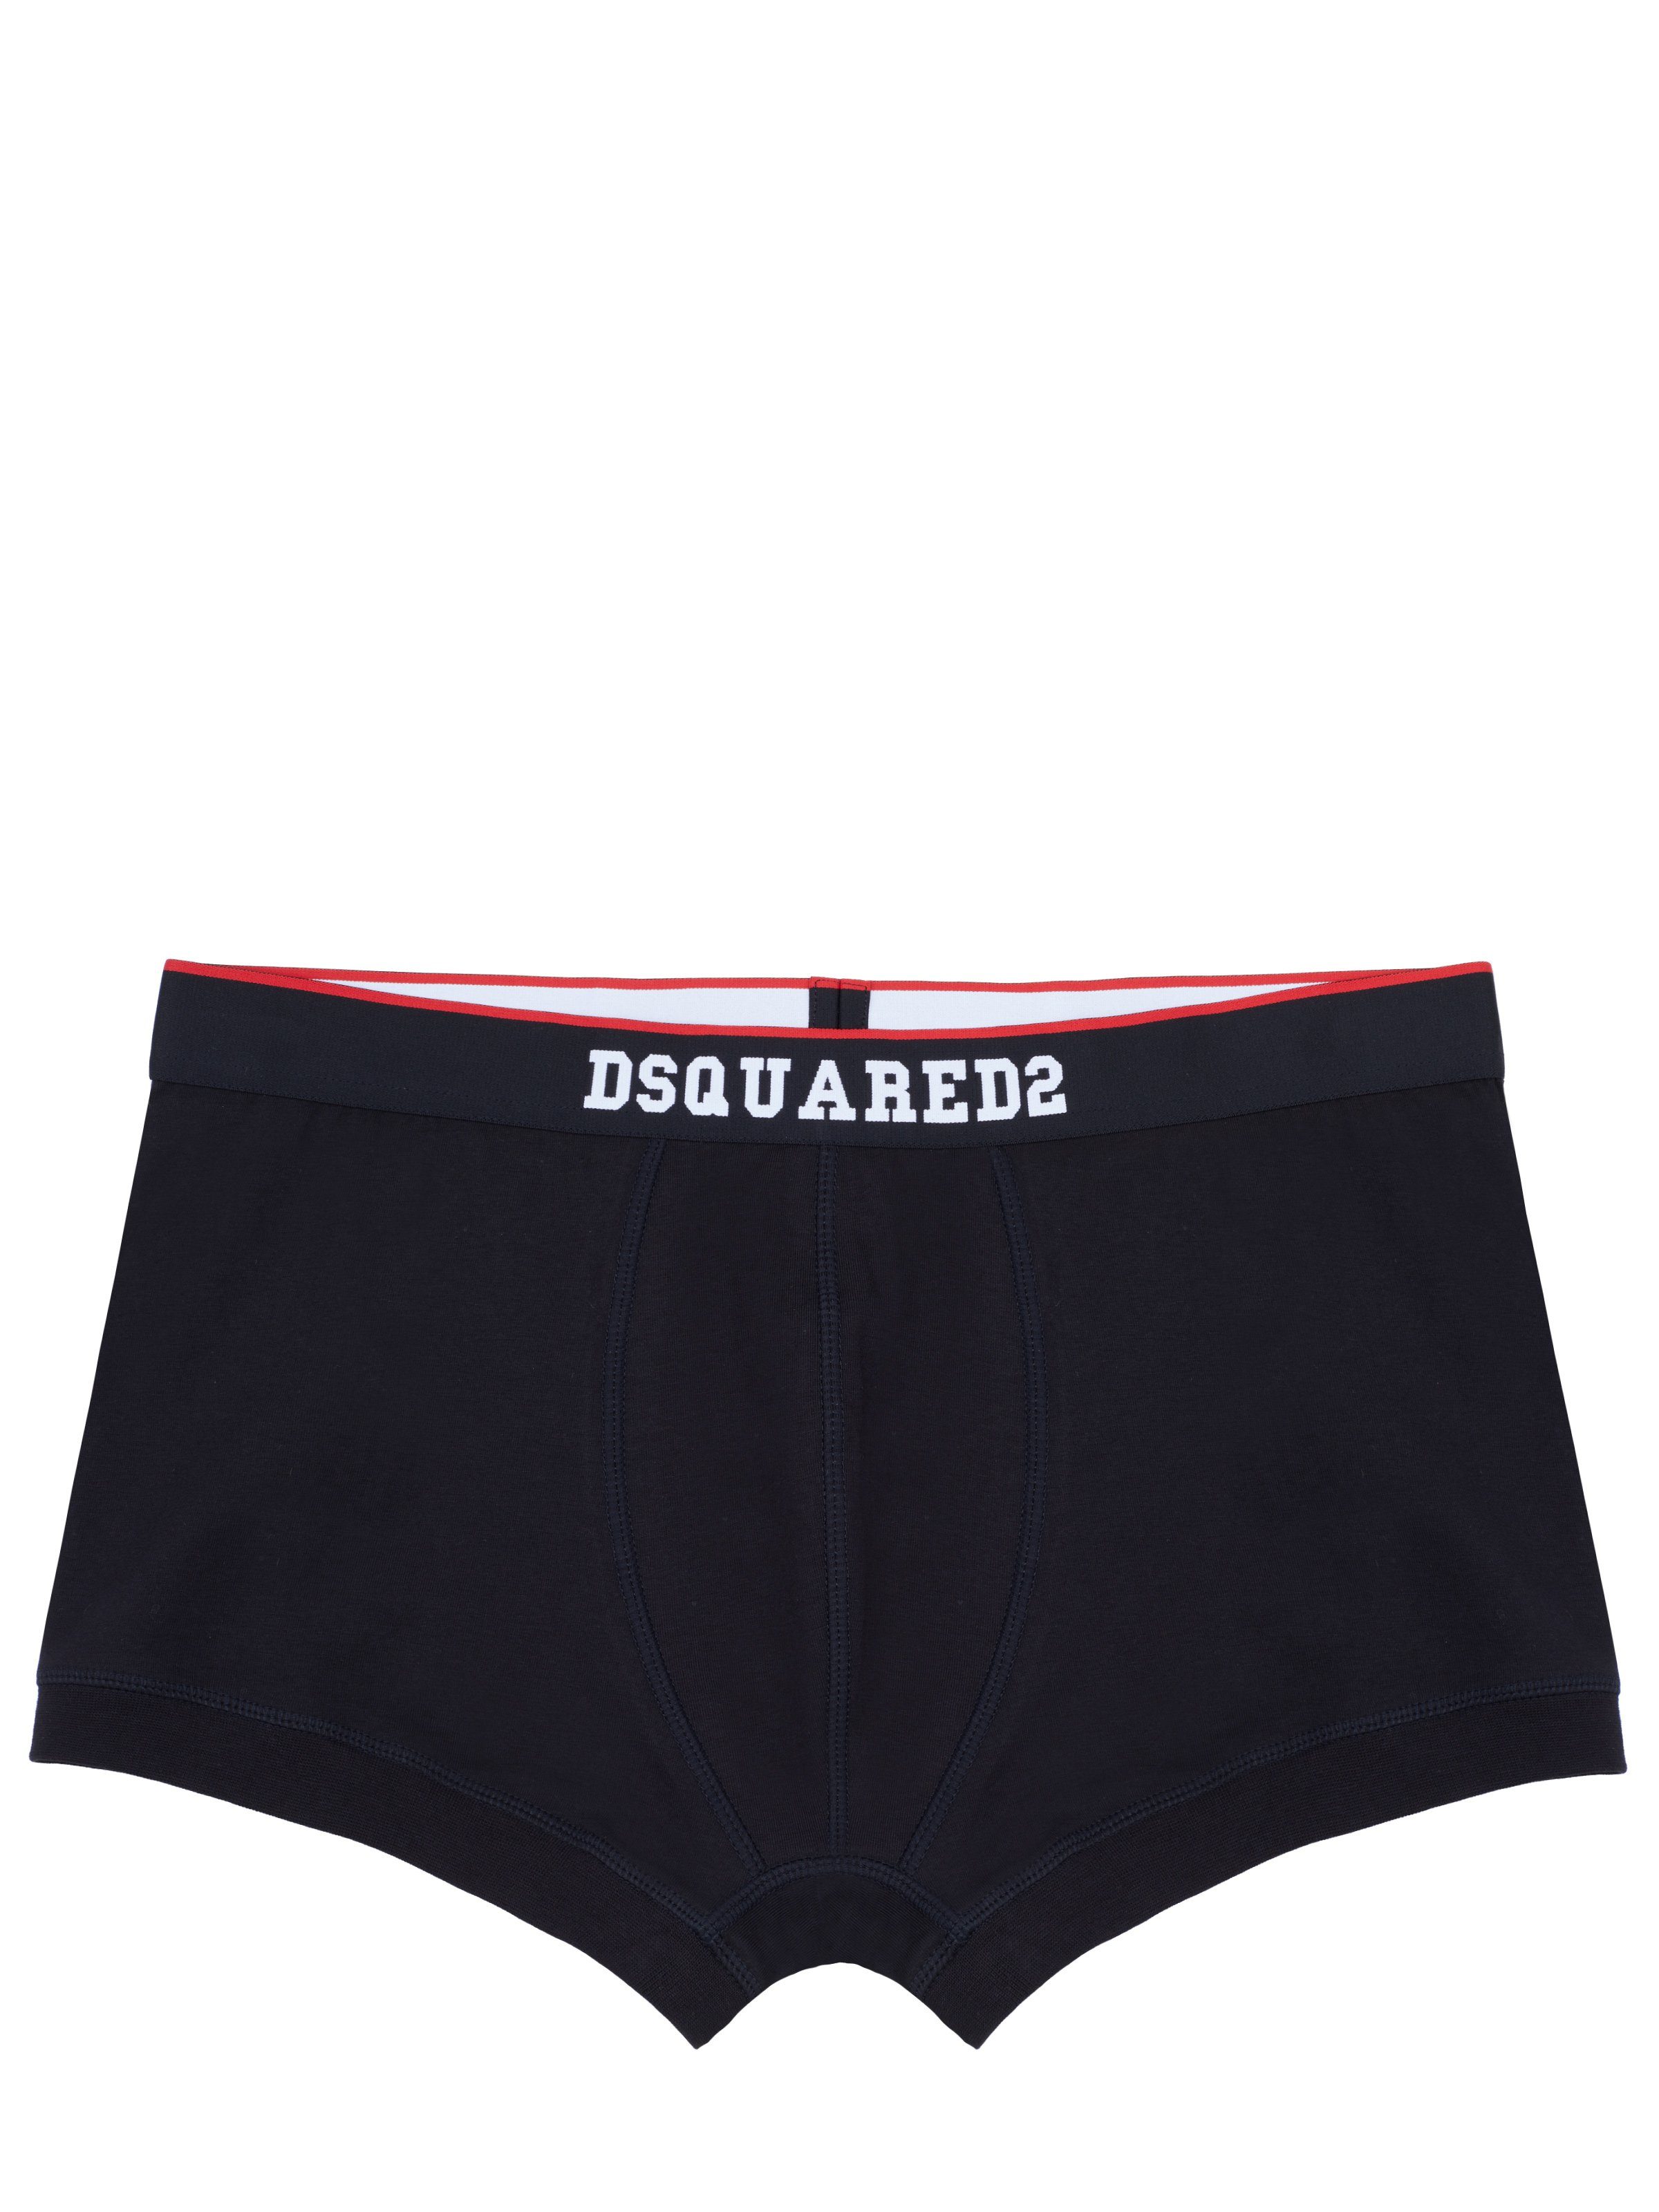 Dsquared2 Боксерские мужские трусы, боксерки Dsquared2 Underwear schwarz